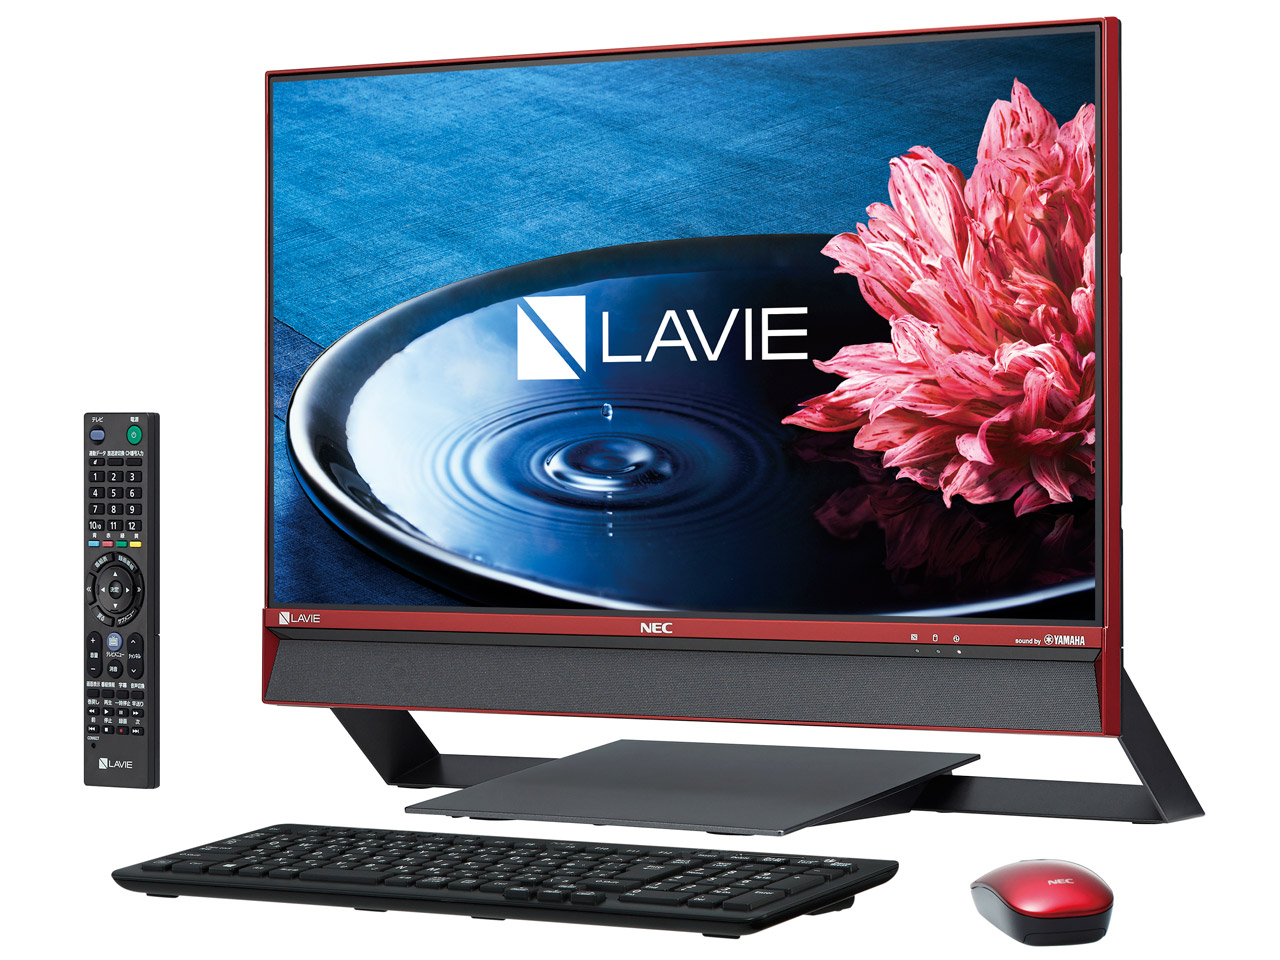 価格.com - LAVIE Desk All-in-one DA770/EA 2016年夏モデル の製品画像